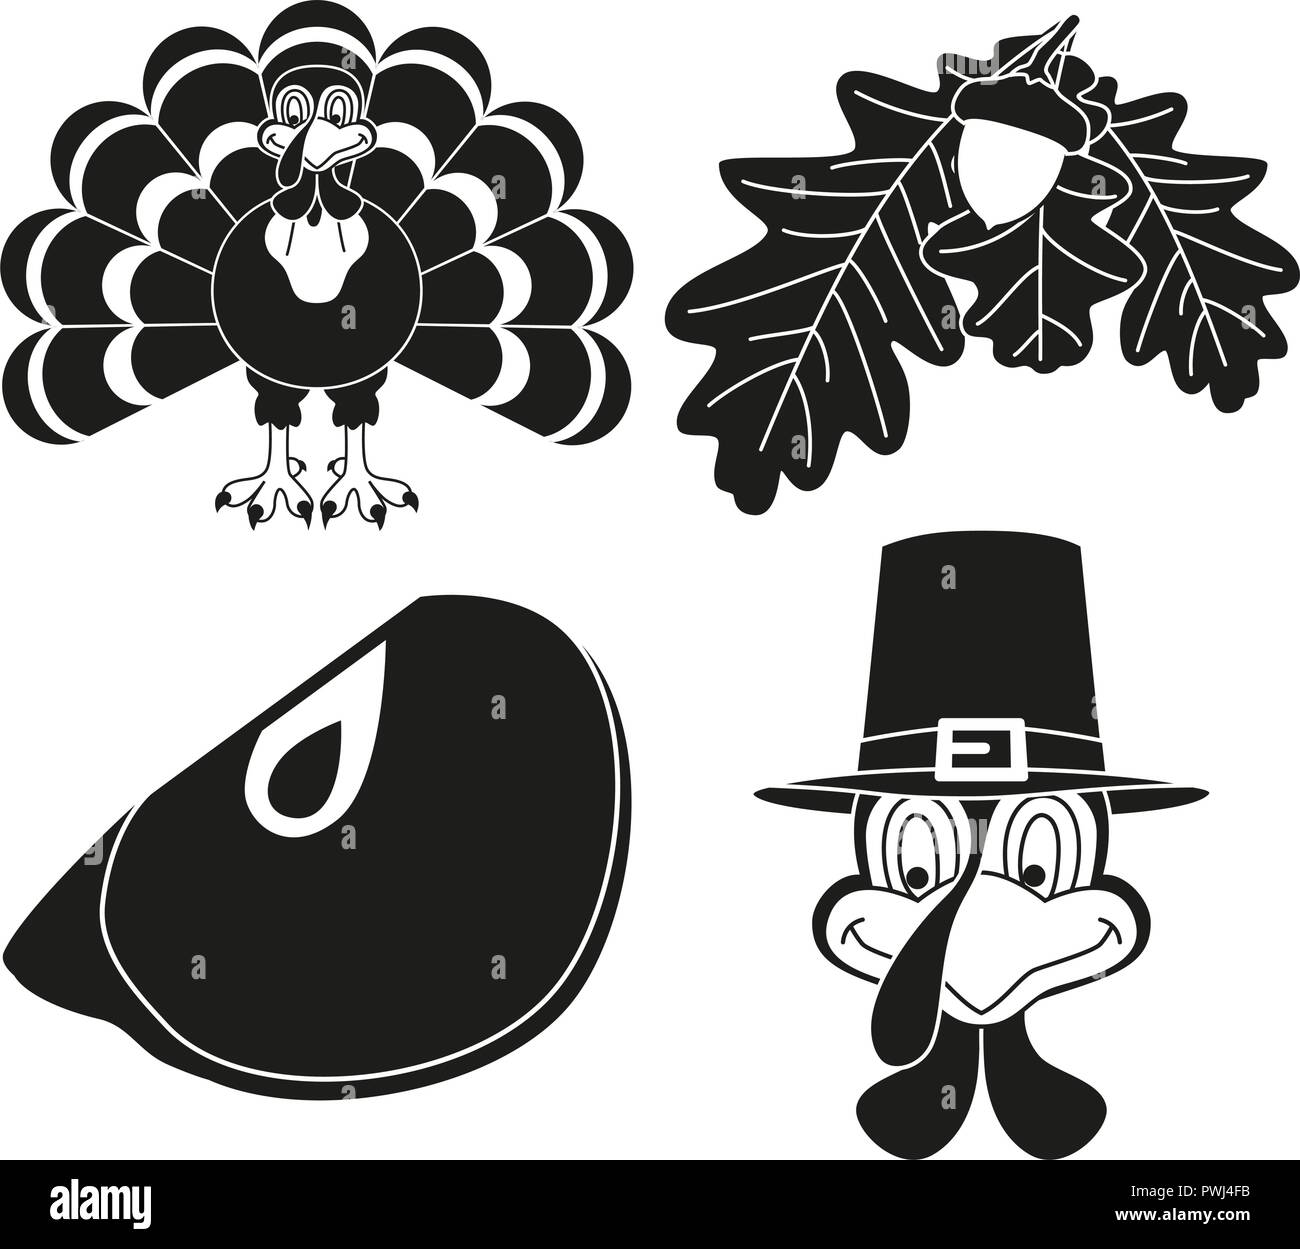 4 blanco y negro silueta thanksgiving elementos establecidos. Otoño de Turquía de aves y plantas. Festival de Otoño themed ilustración vectorial de icono, etiqueta, stick Ilustración del Vector